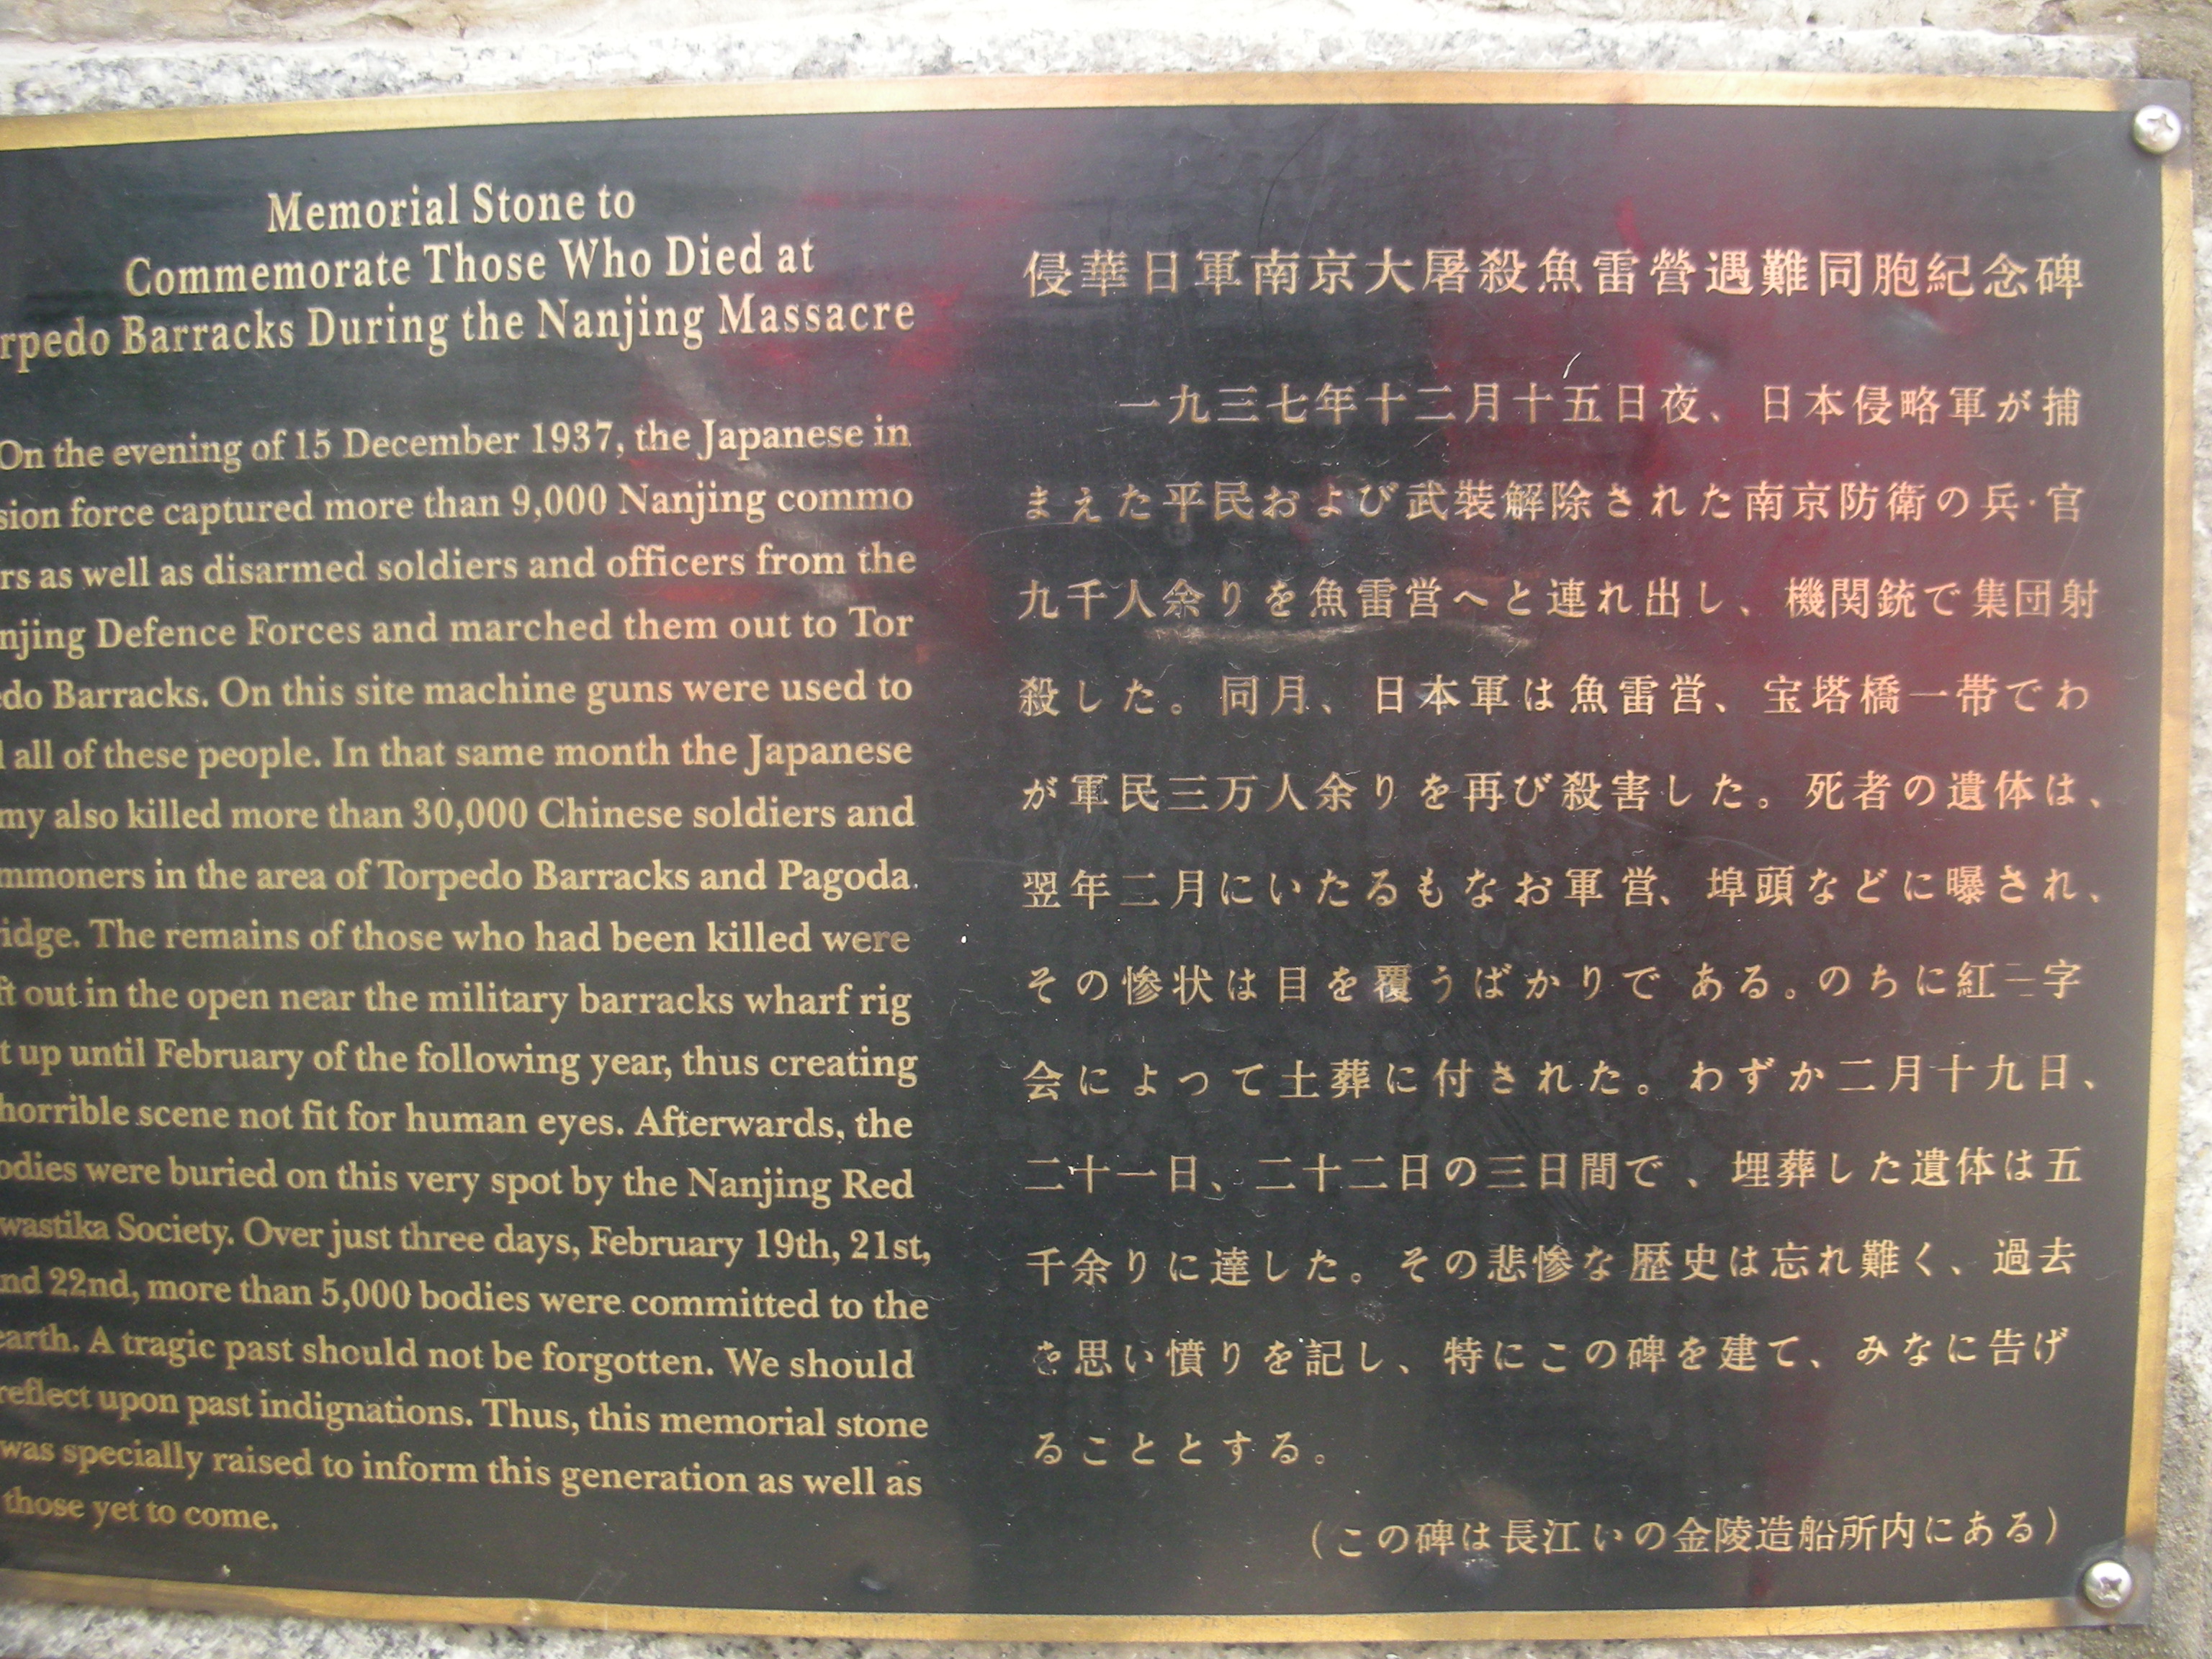 三国の呉や六朝・明・中華民国などの都として栄えた南京(その8.中国人が日本人をどのように見ているのか勉強になった南京大虐殺紀念館)